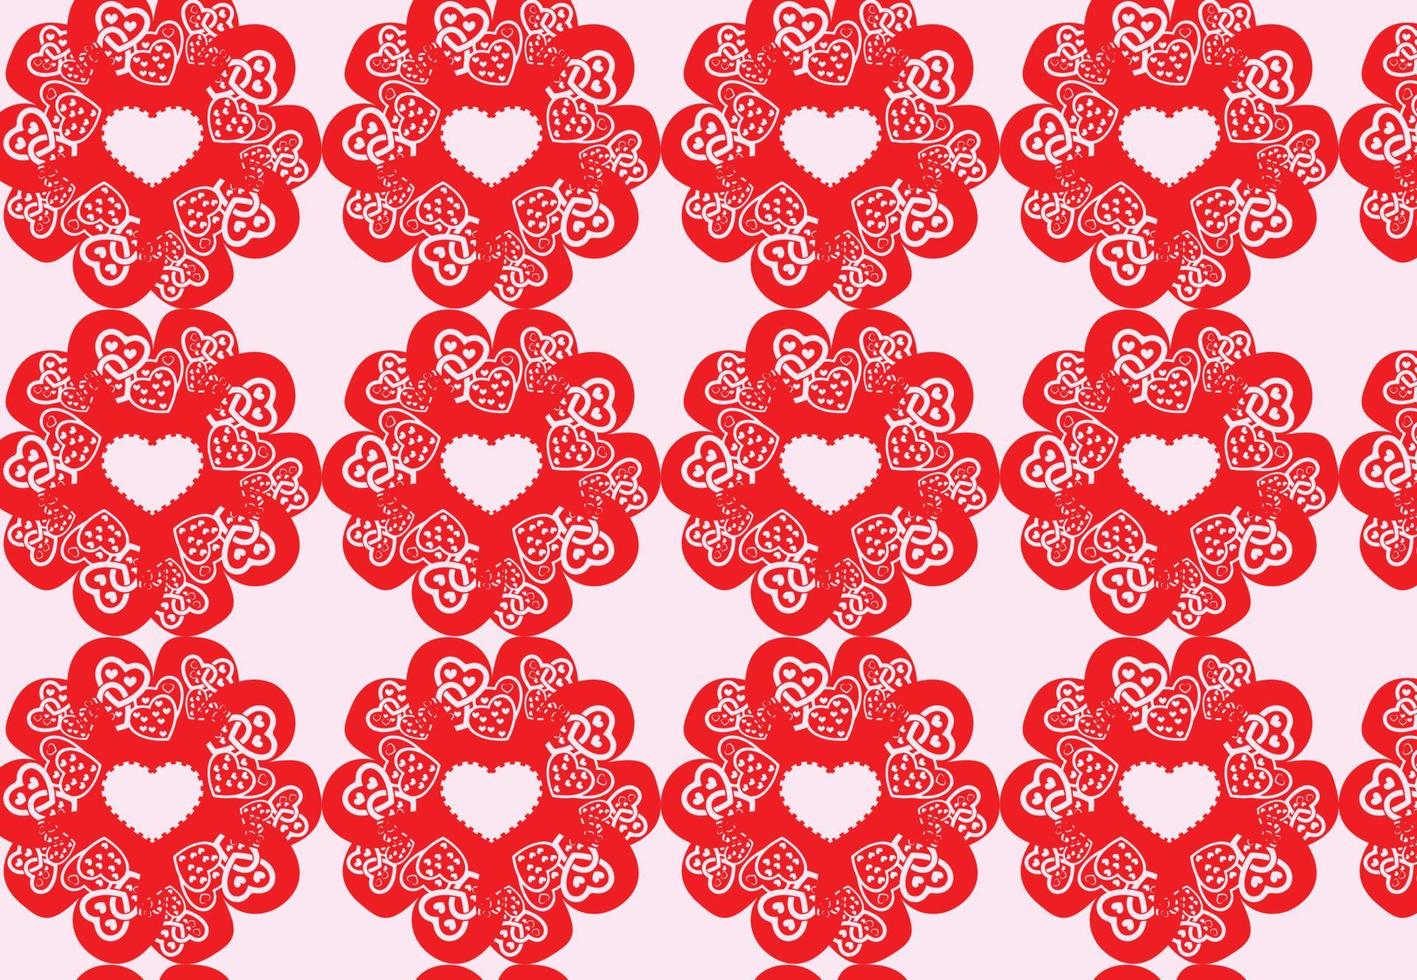 Herzen Musterdesign. Liebeskonzept. Design von Texturen und Hintergründen vektor